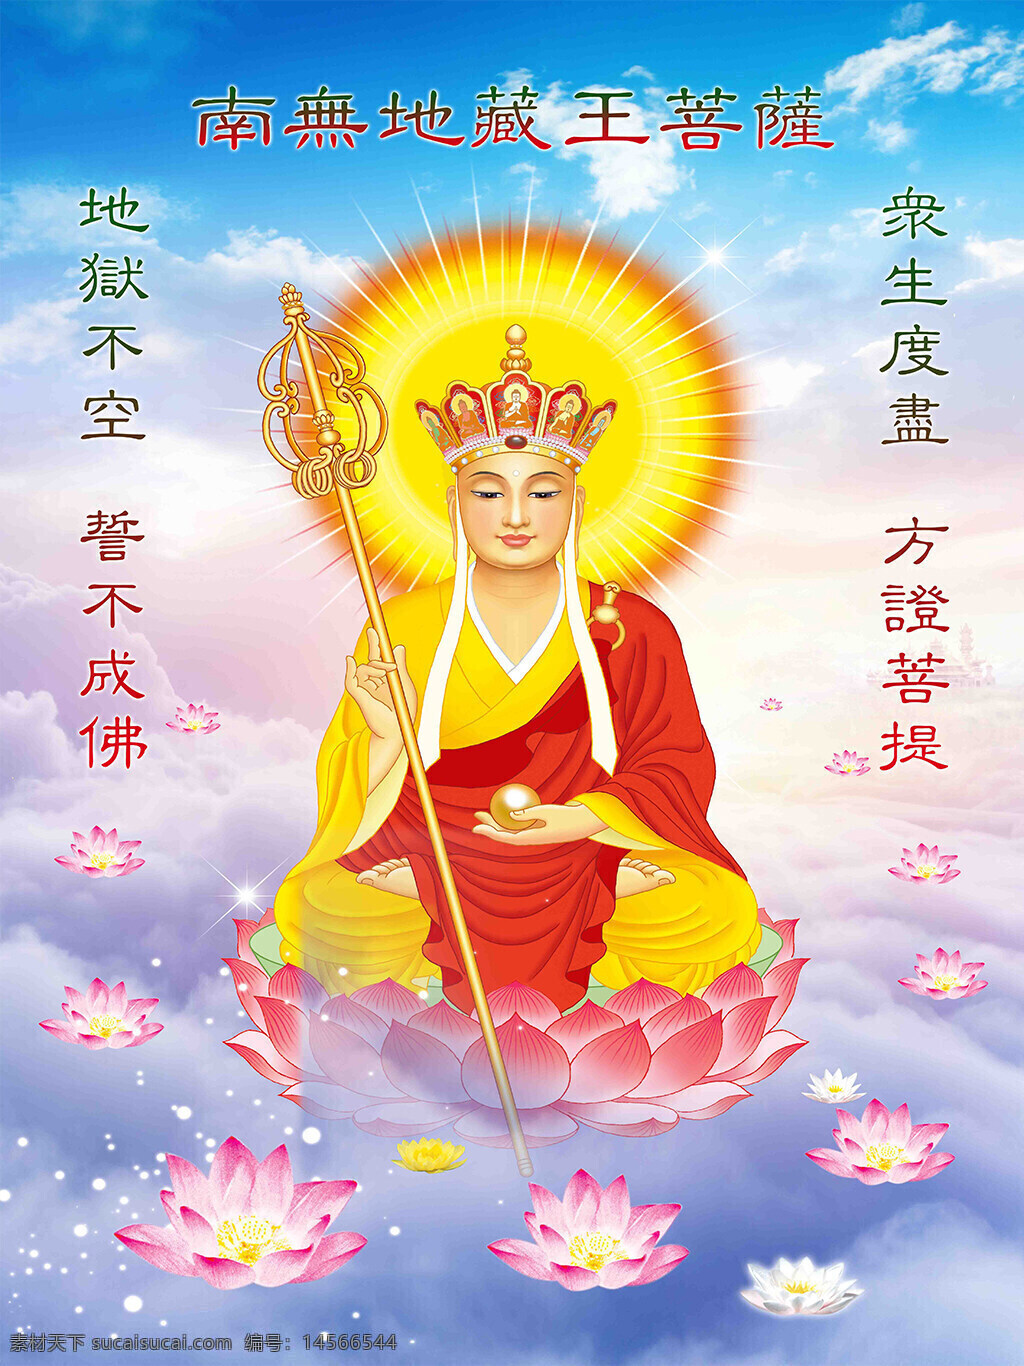 宗教佛教人物 菩萨 地藏王 佛教信仰 宗教文化 莲花 天空云端